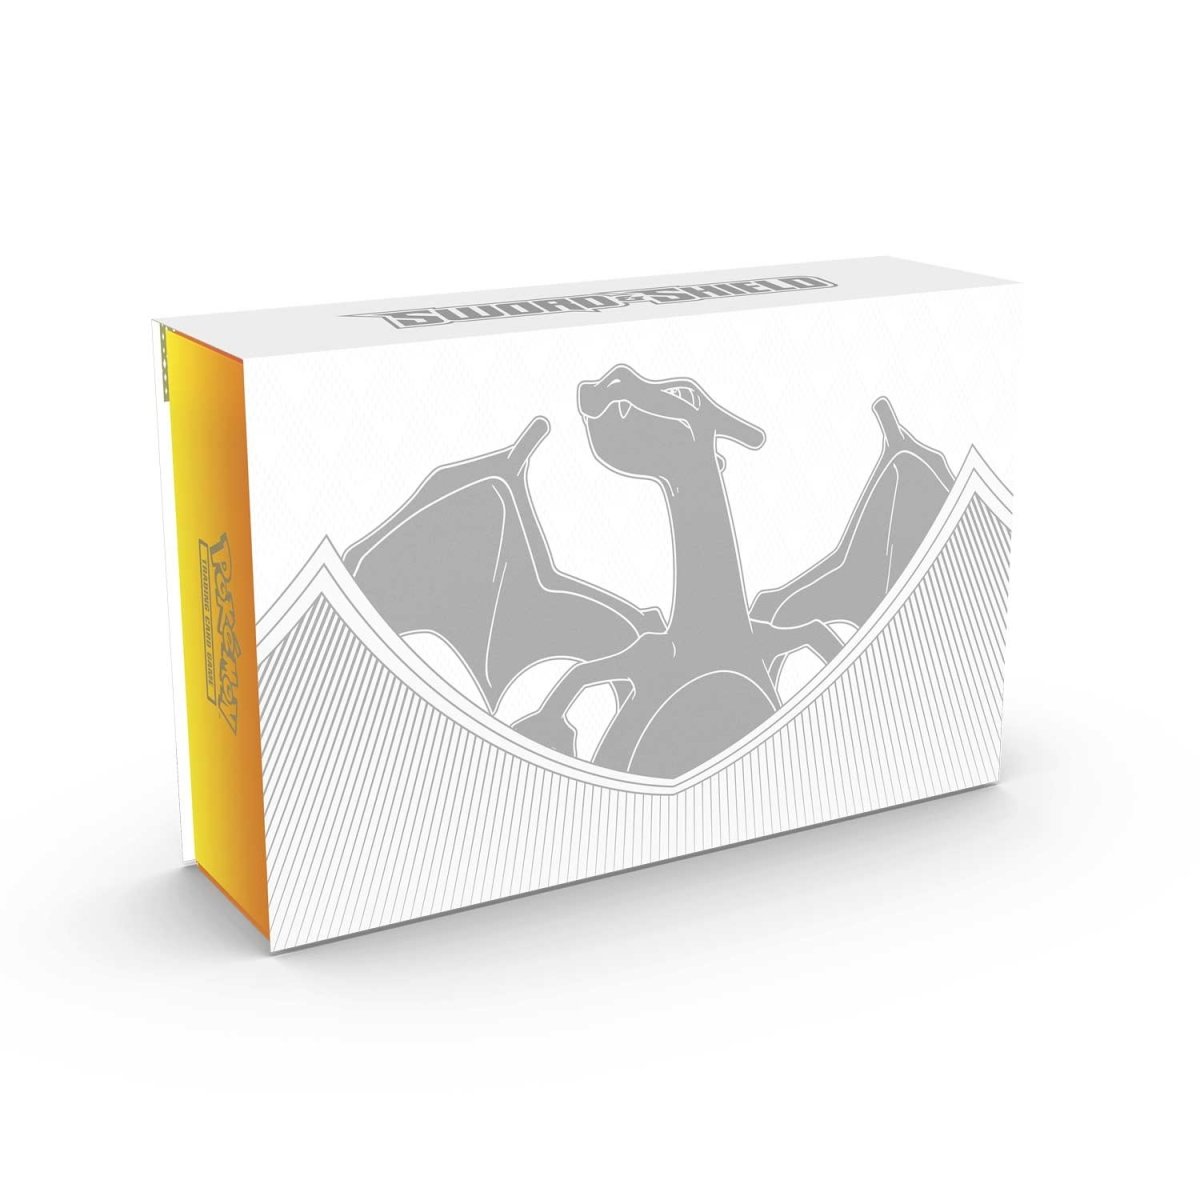 Pokemon - Ultra Premium Collection Box - Charizard